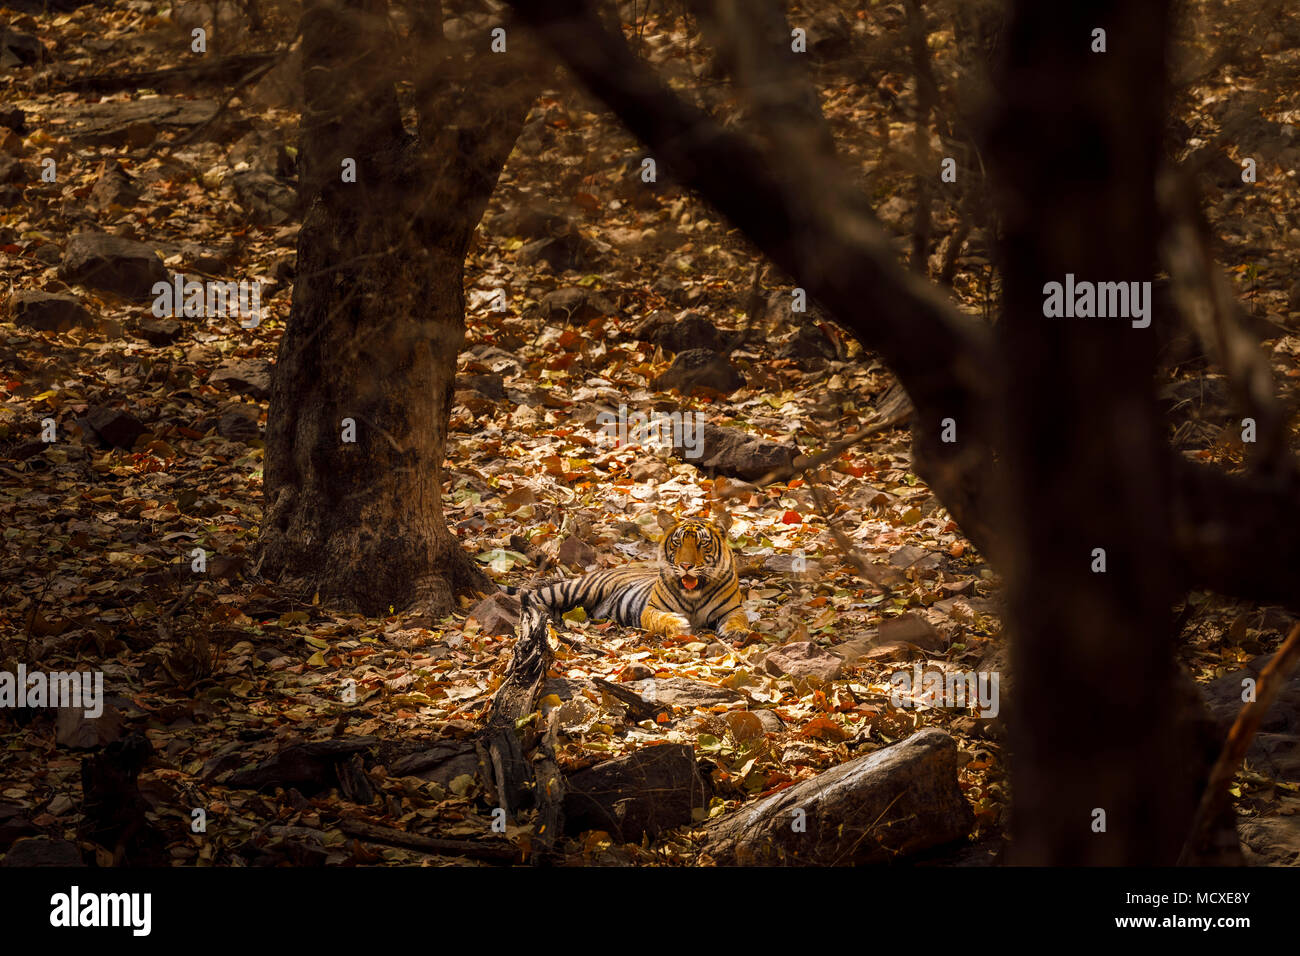 Tigre del Bengala (Panthera tigris) che stabilisce a riposo mimetizzato nella luce pezzata nel bosco, il Parco nazionale di Ranthambore, Rajasthan, India settentrionale Foto Stock